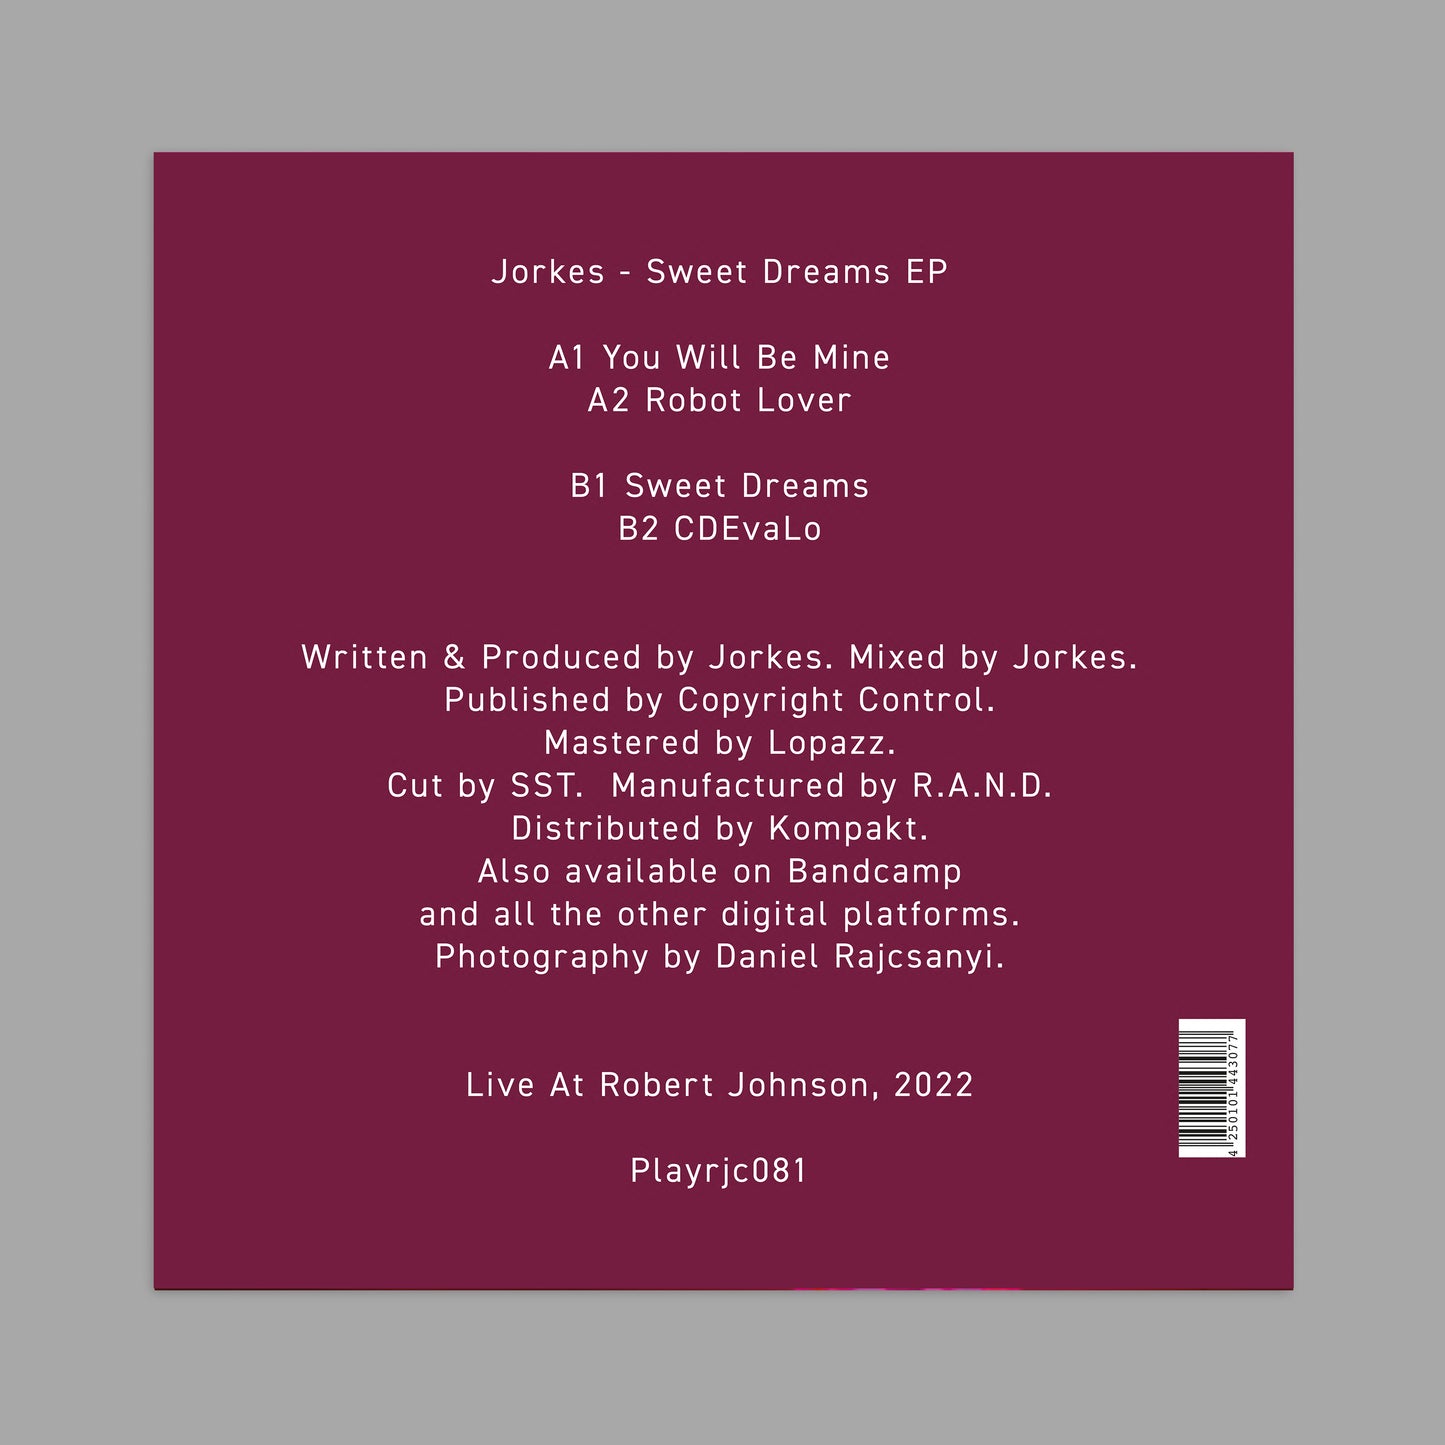 "Sweet Dreams EP" by Jorkes